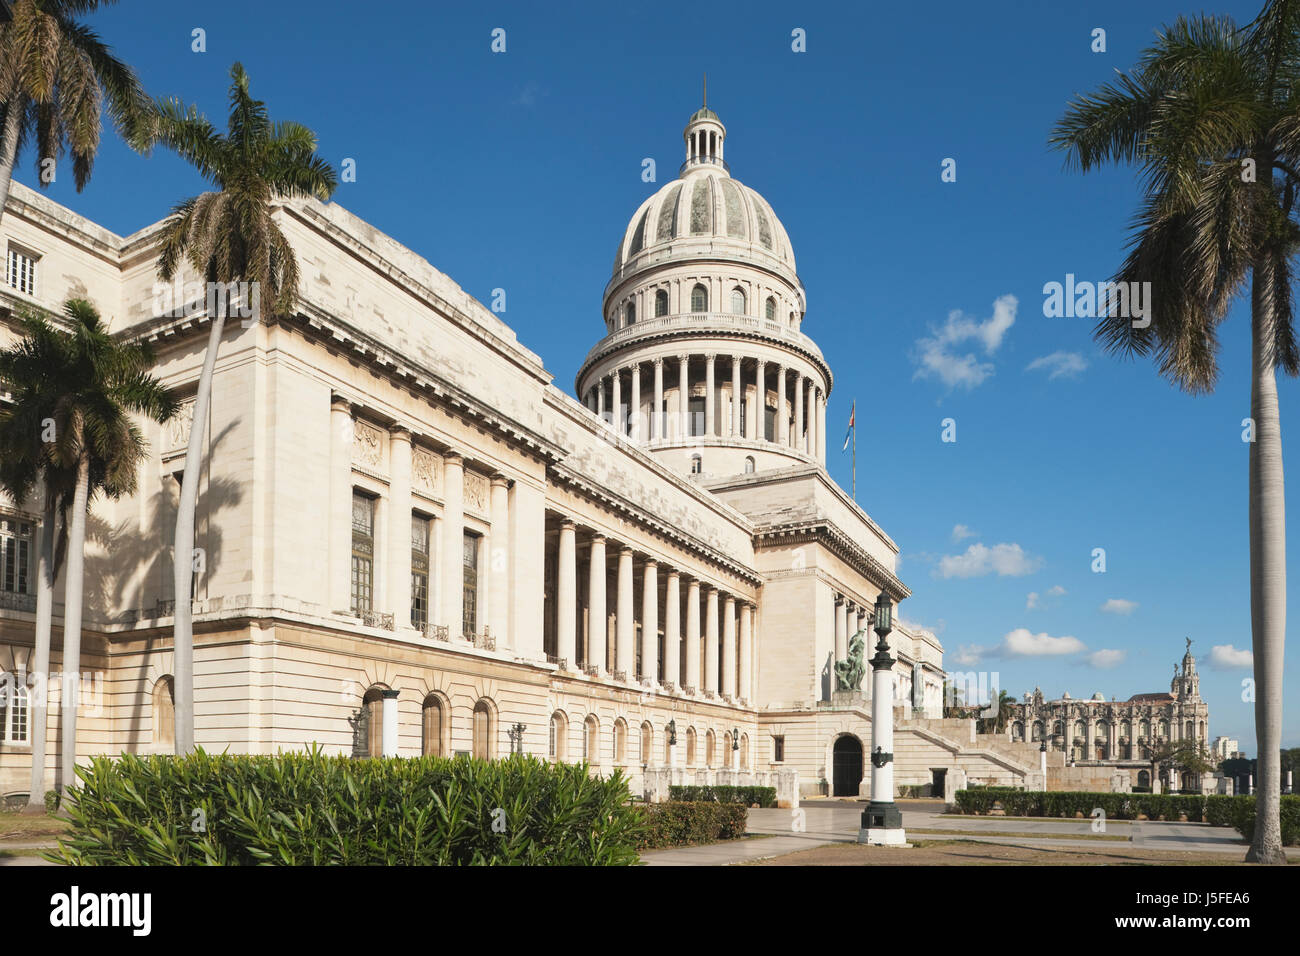 National Capital Building, El Capitolio Nacional, La Habana, Cuba Stock Photo